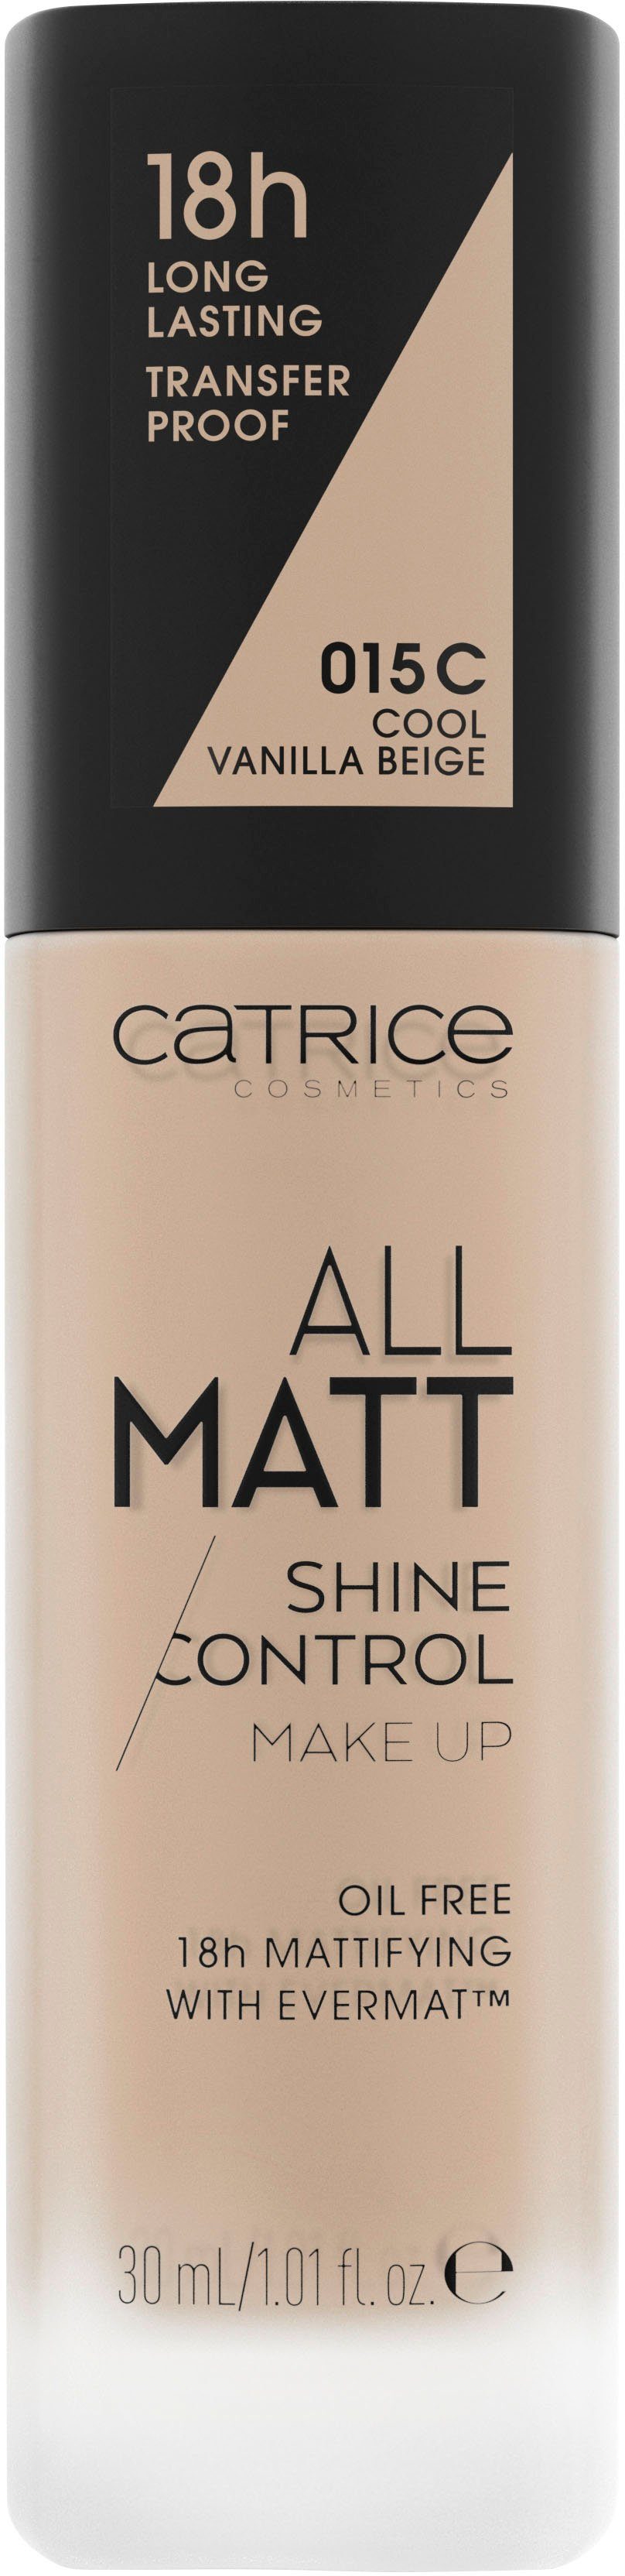 Catrice Foundation All Control für Unreinheiten Up, neigende Auch Haut Shine oder Matt zu Make ölige